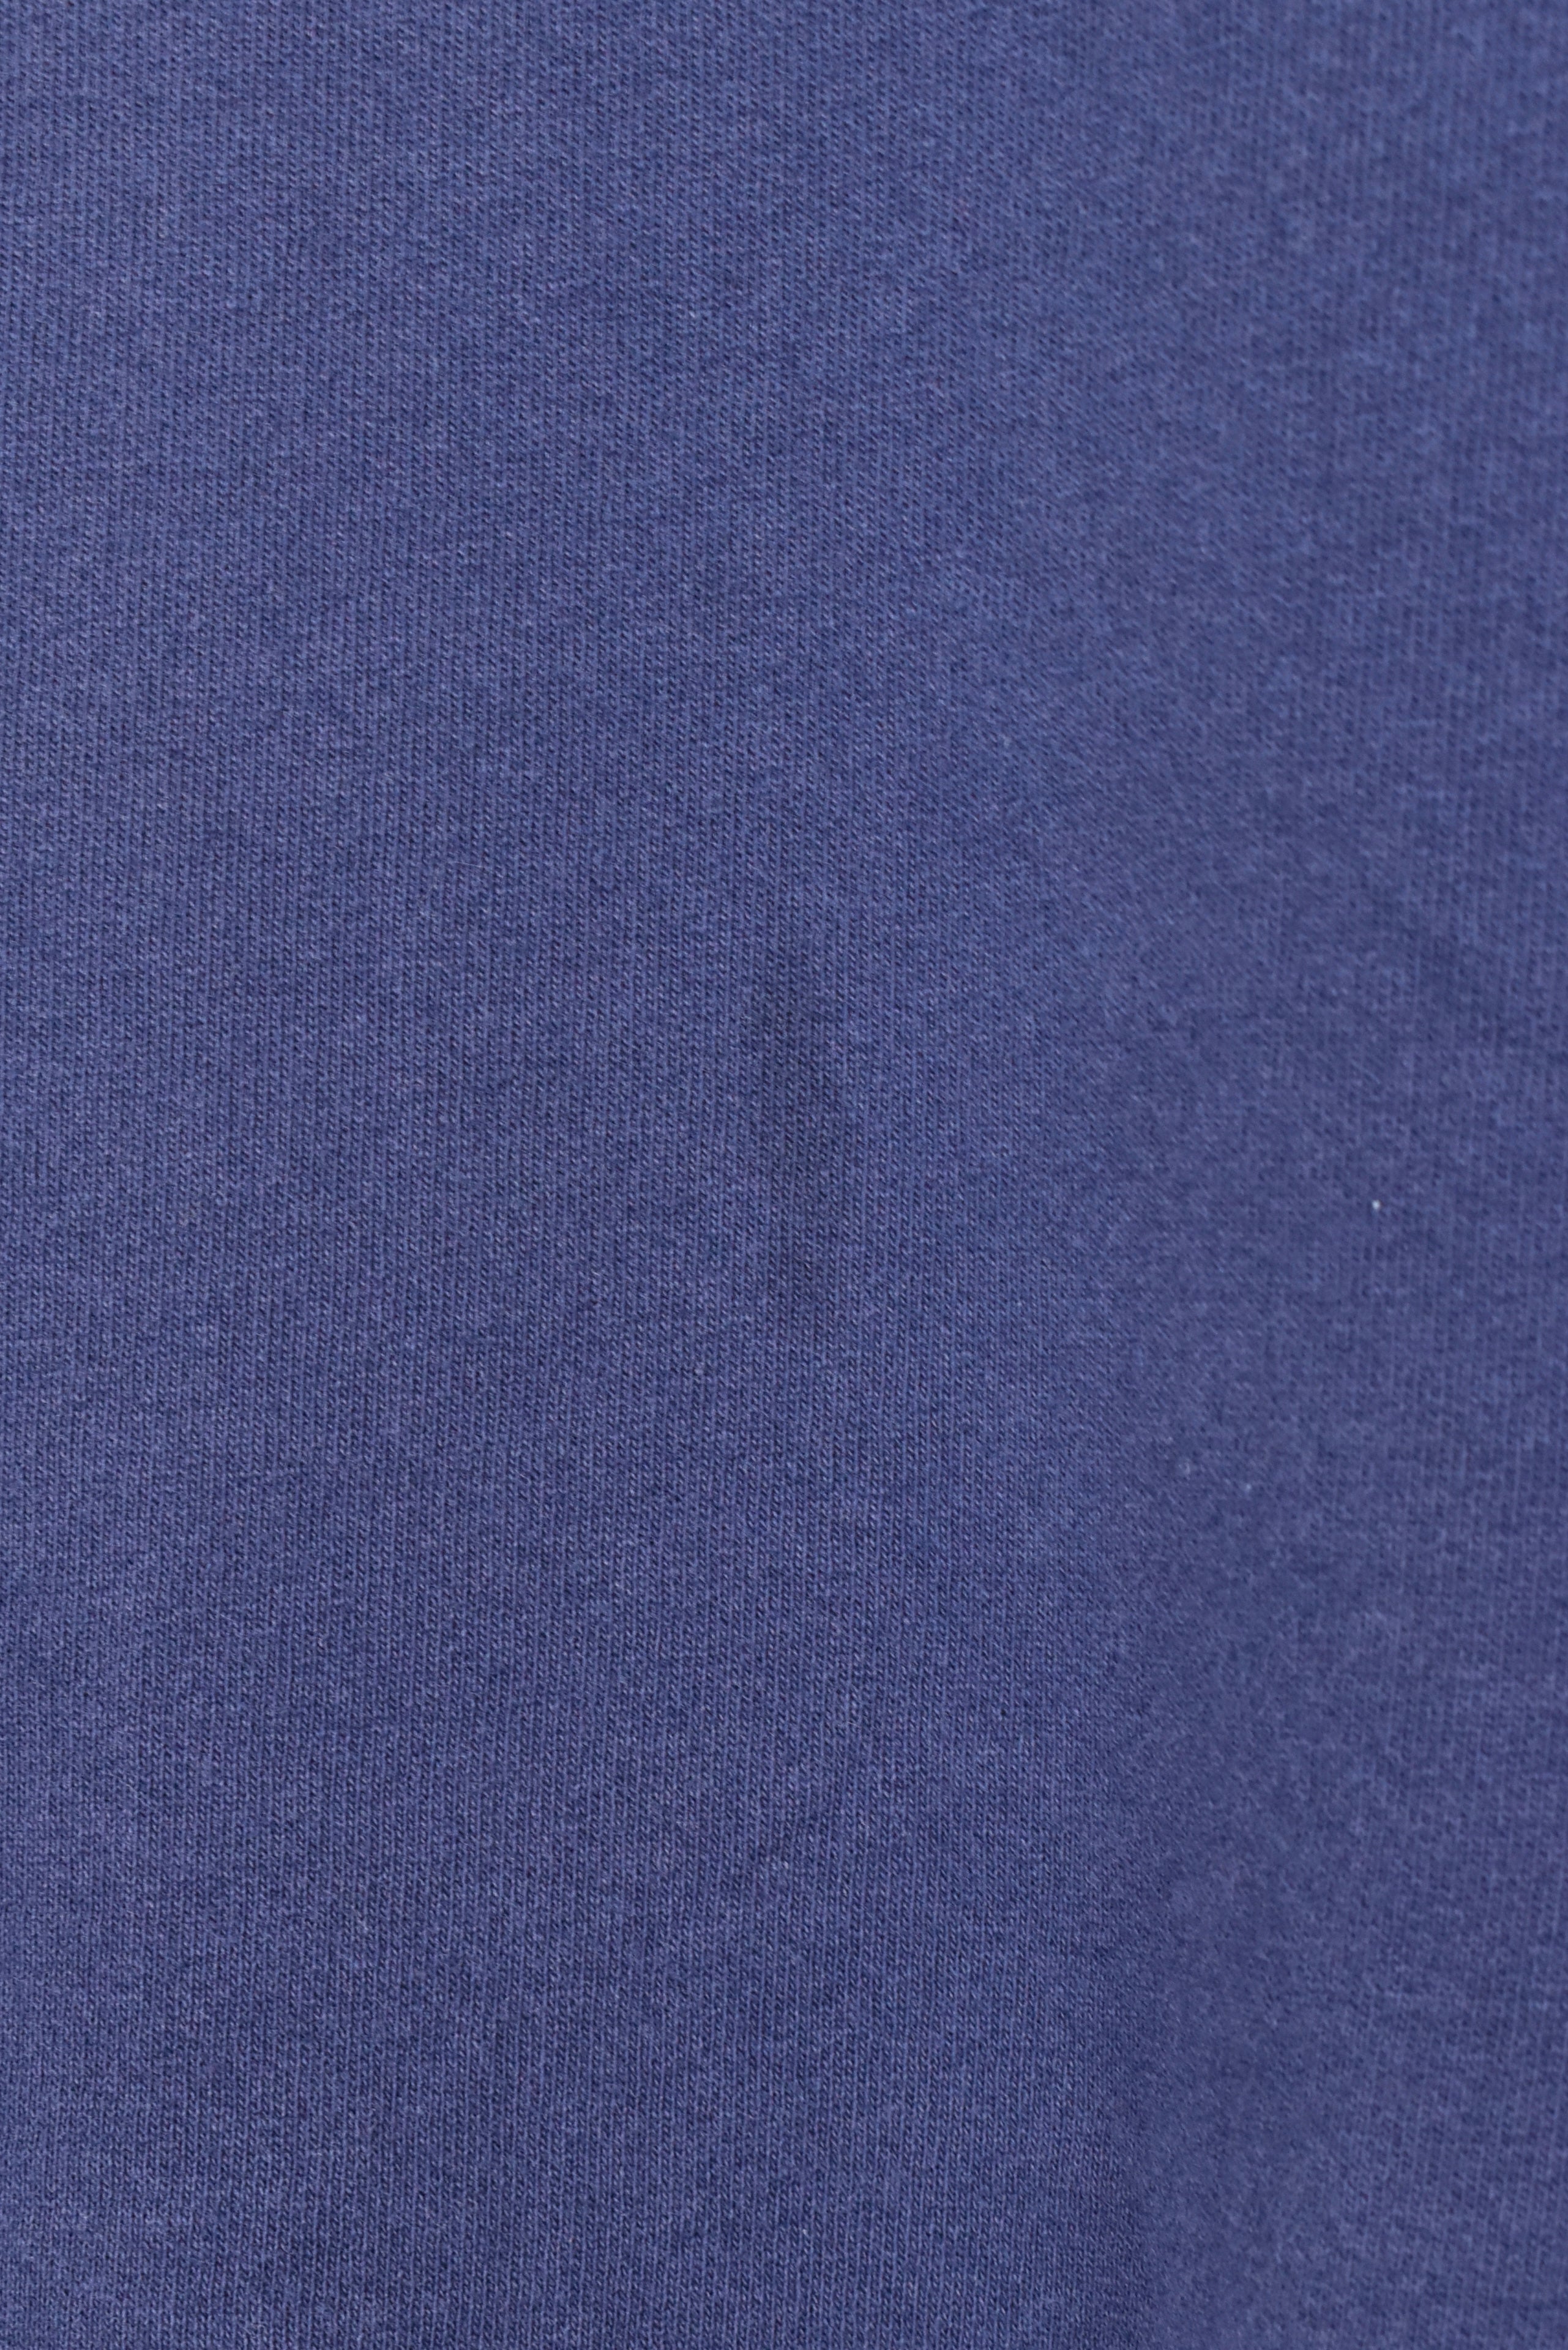 Vintage Starter sweatshirt, navy blue basic embroidered crewneck - AU Large STARTER